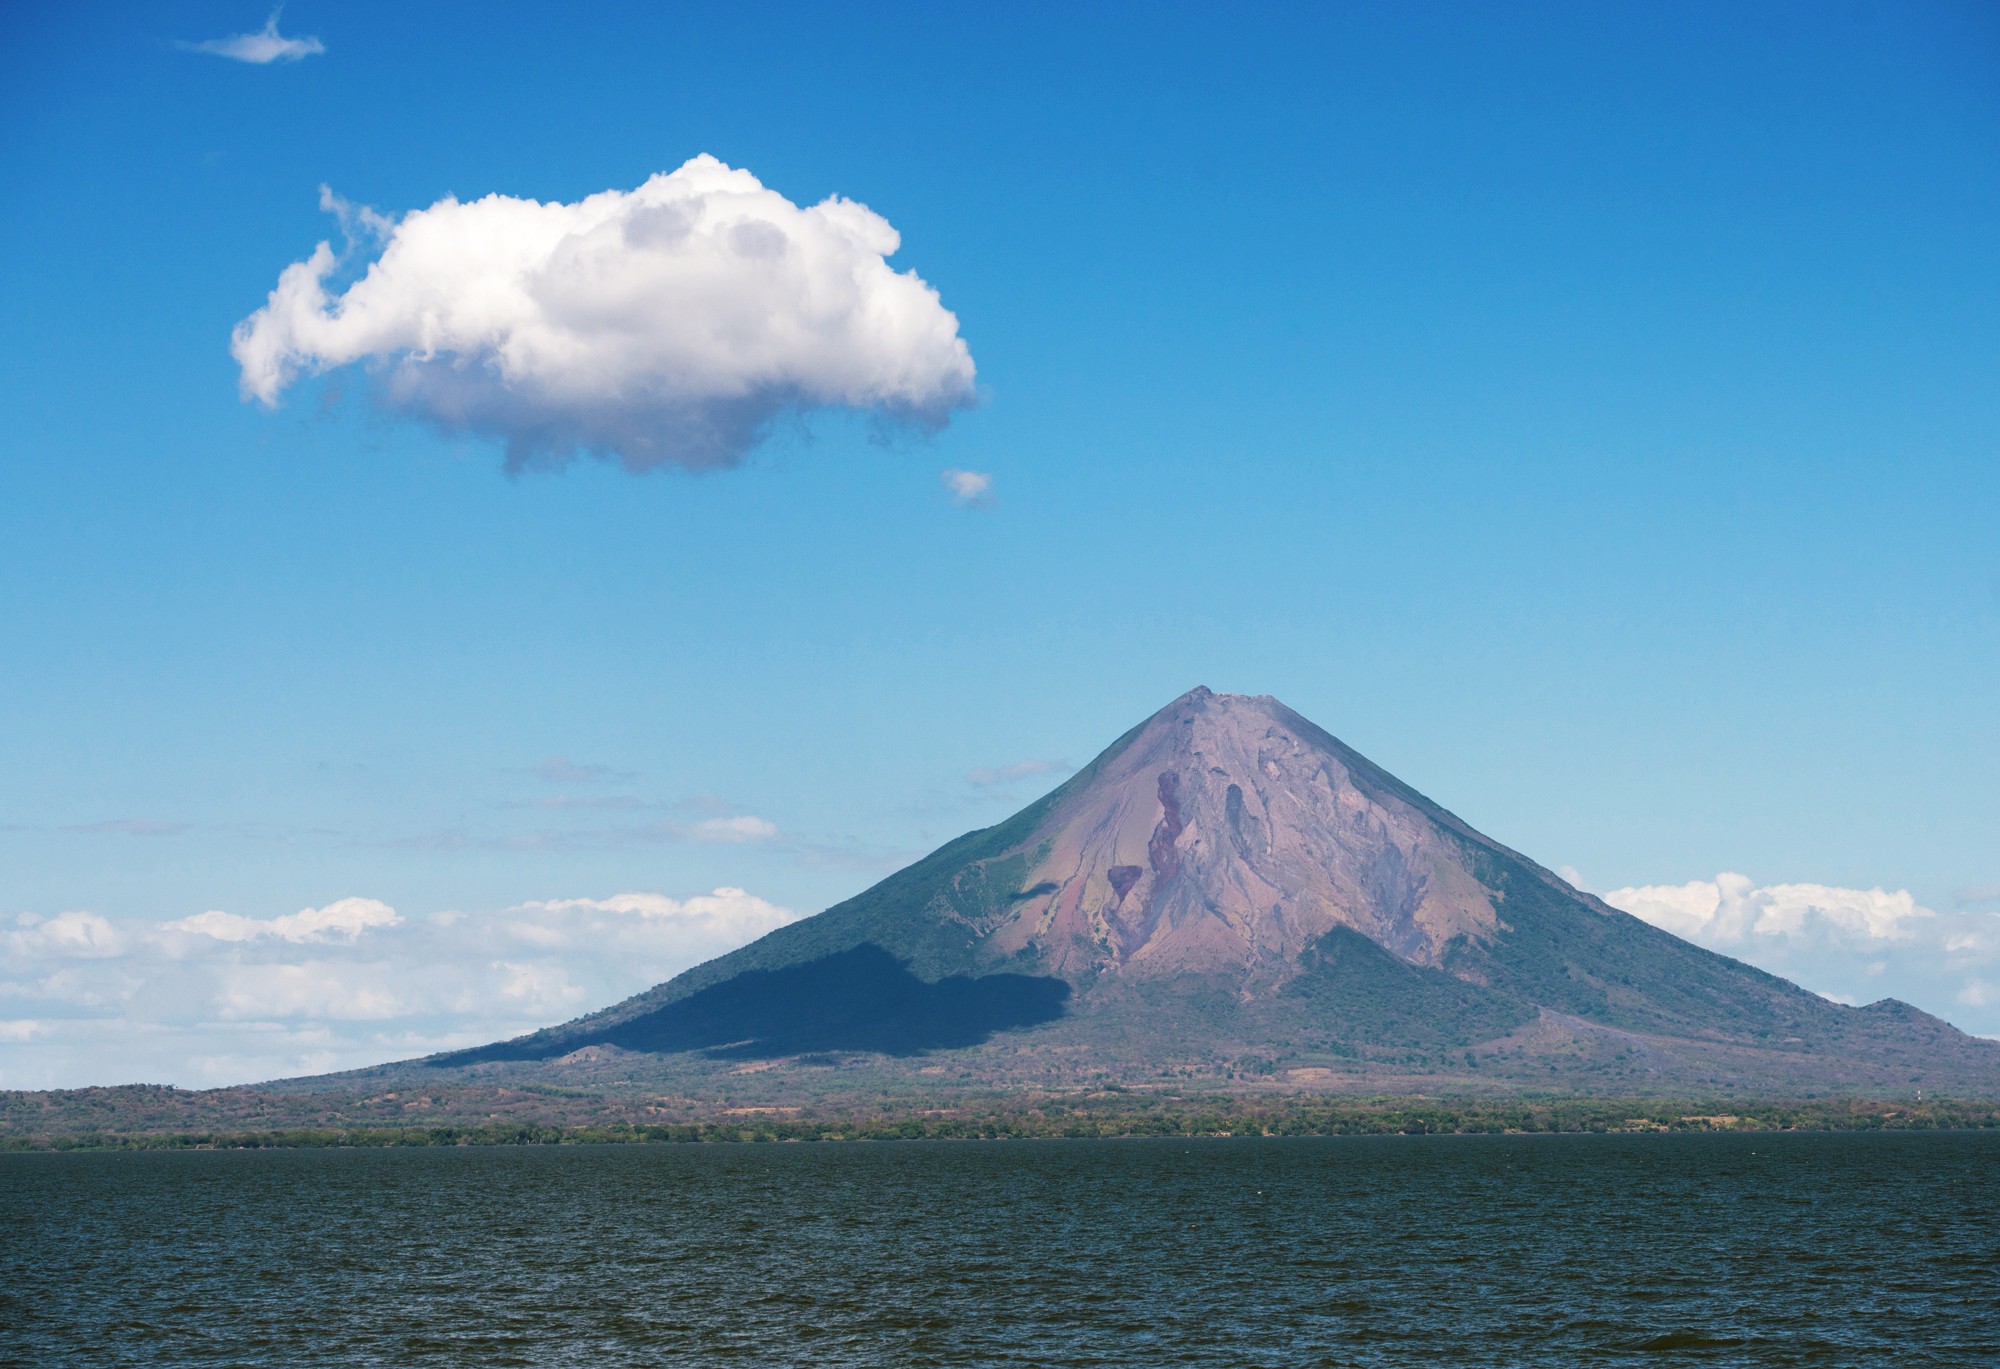 Остров Ометепе на одноименном озере в Никарагуа и вулкан Консепсьон, на который мы таки умудрились заползти!